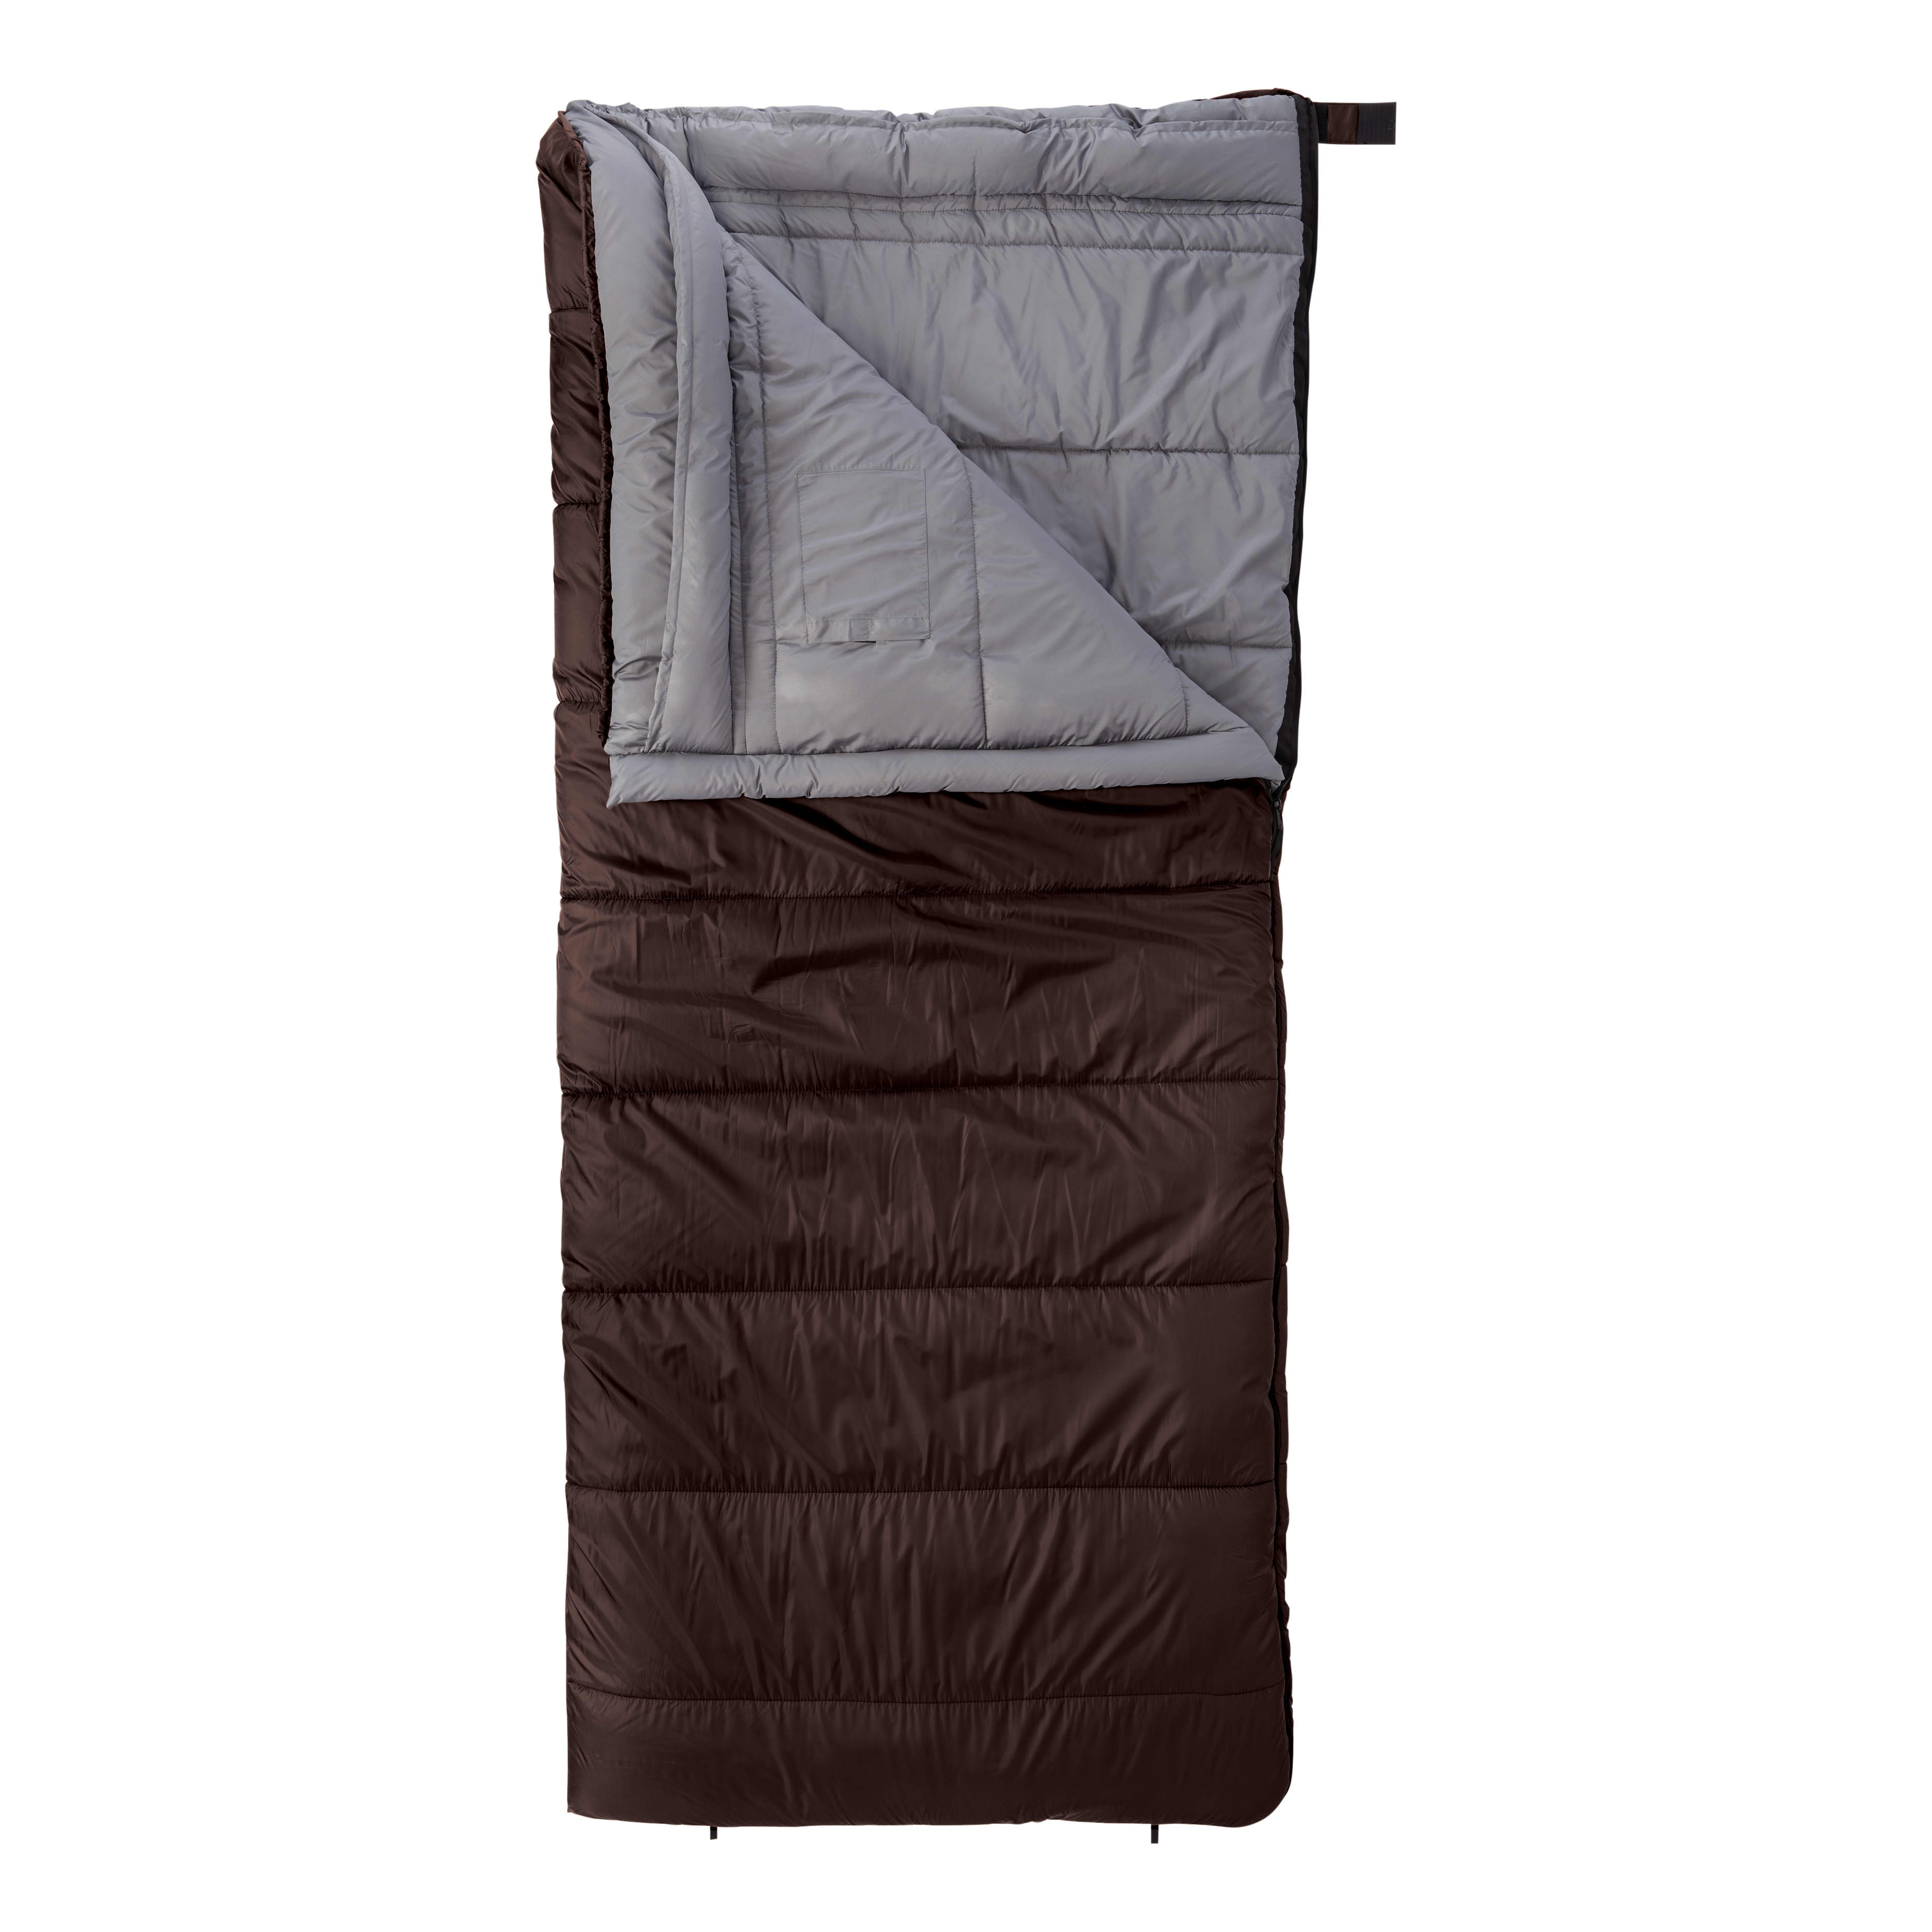 Cabela's Getaway -18°C Rectangle Sleeping Bag